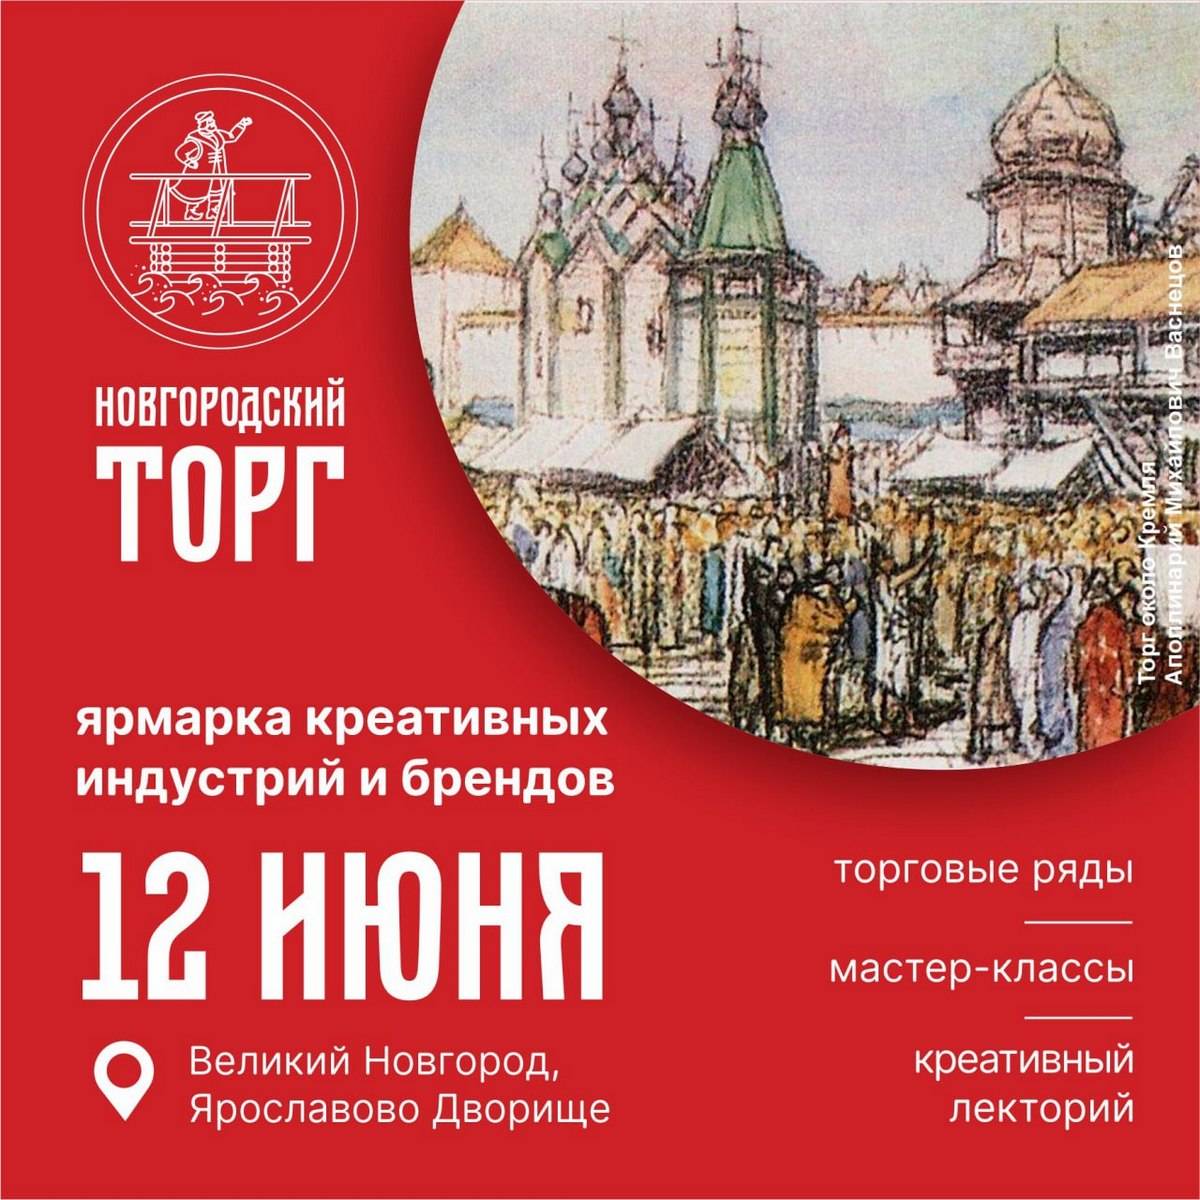 Ярмарка начнёт работать в 10:00 12 июня на Ярославовом дворище.